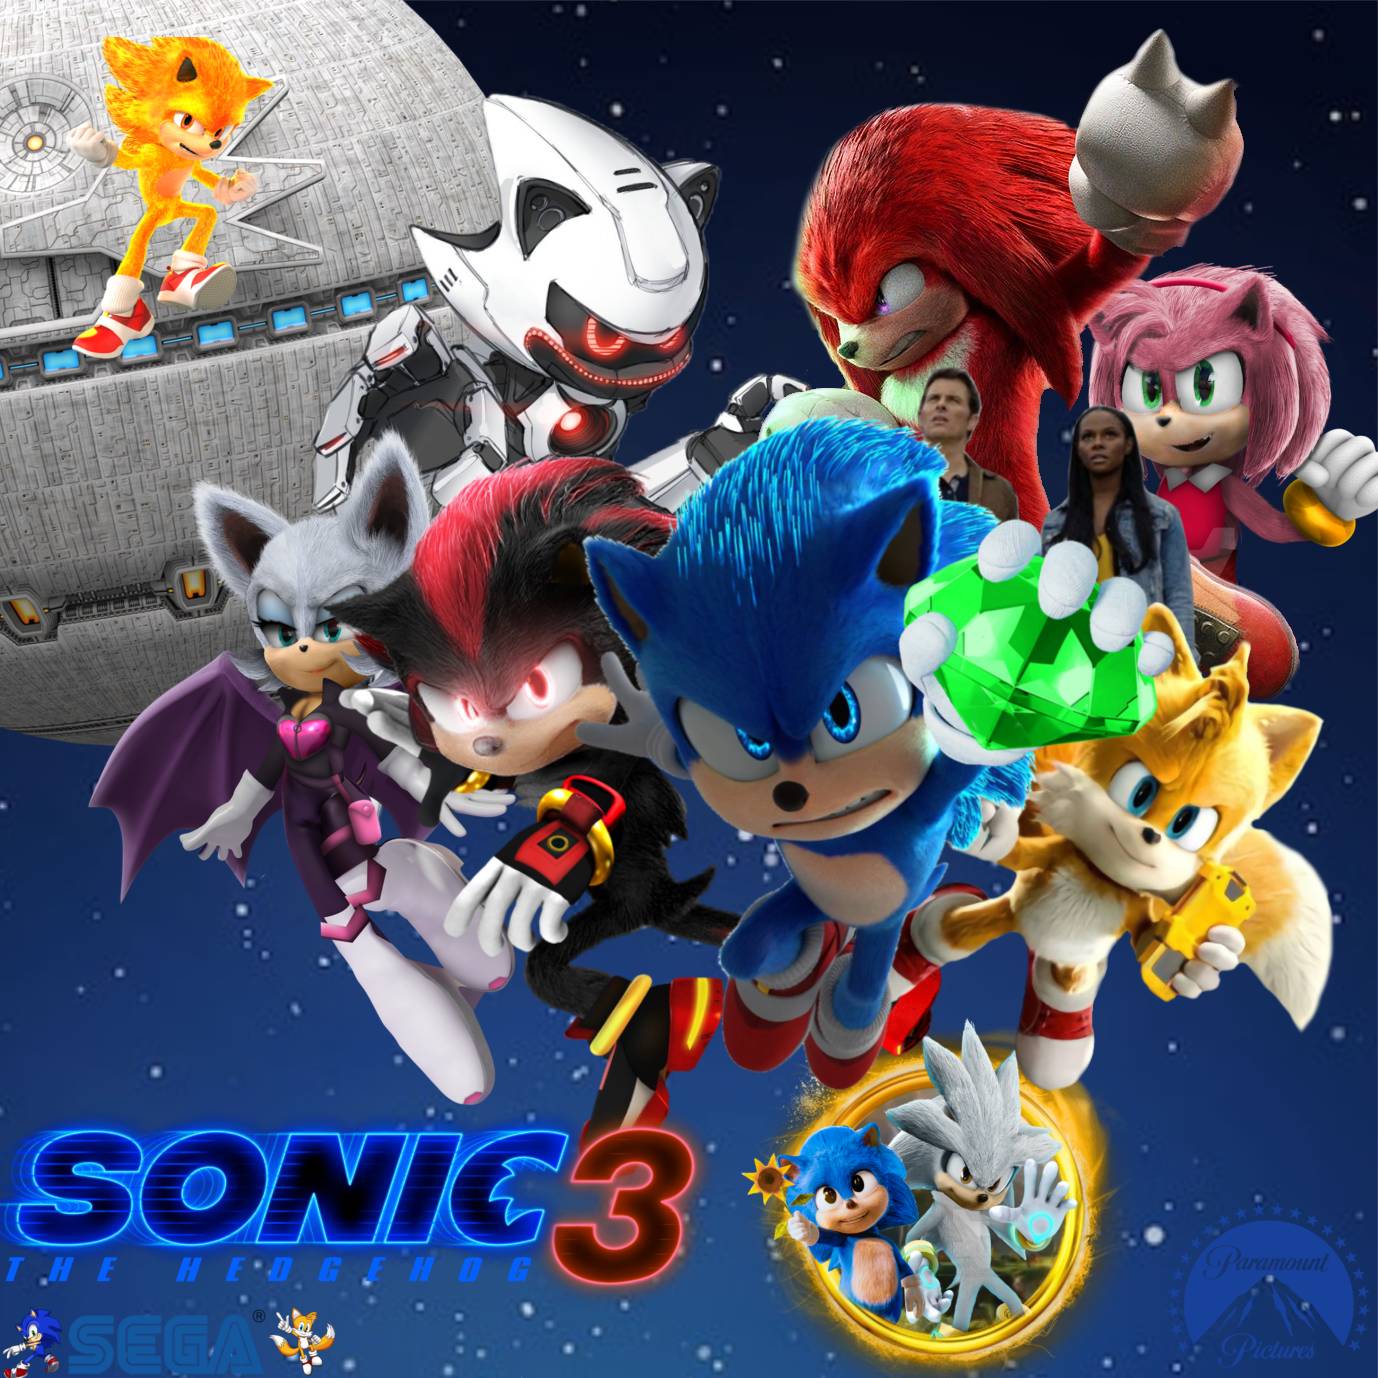 Sonic 3 la película poster con sonic, shadow, silver y metal sonic